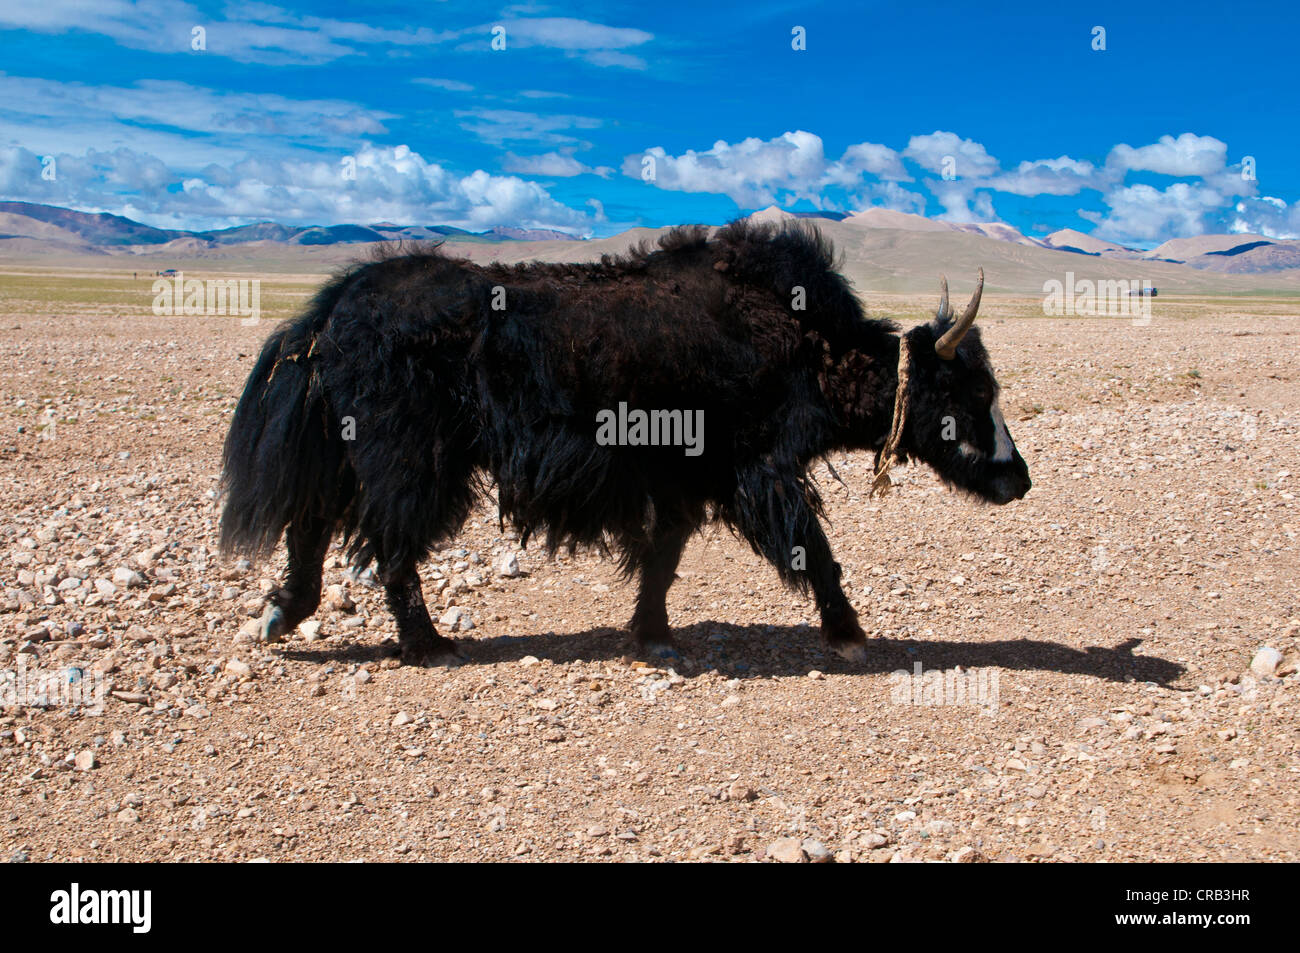 El yak tibetano abierta en el paisaje a lo largo de la carretera de Tsochen en Lhasa, Tibet, Tibet occidental, Asia Foto de stock